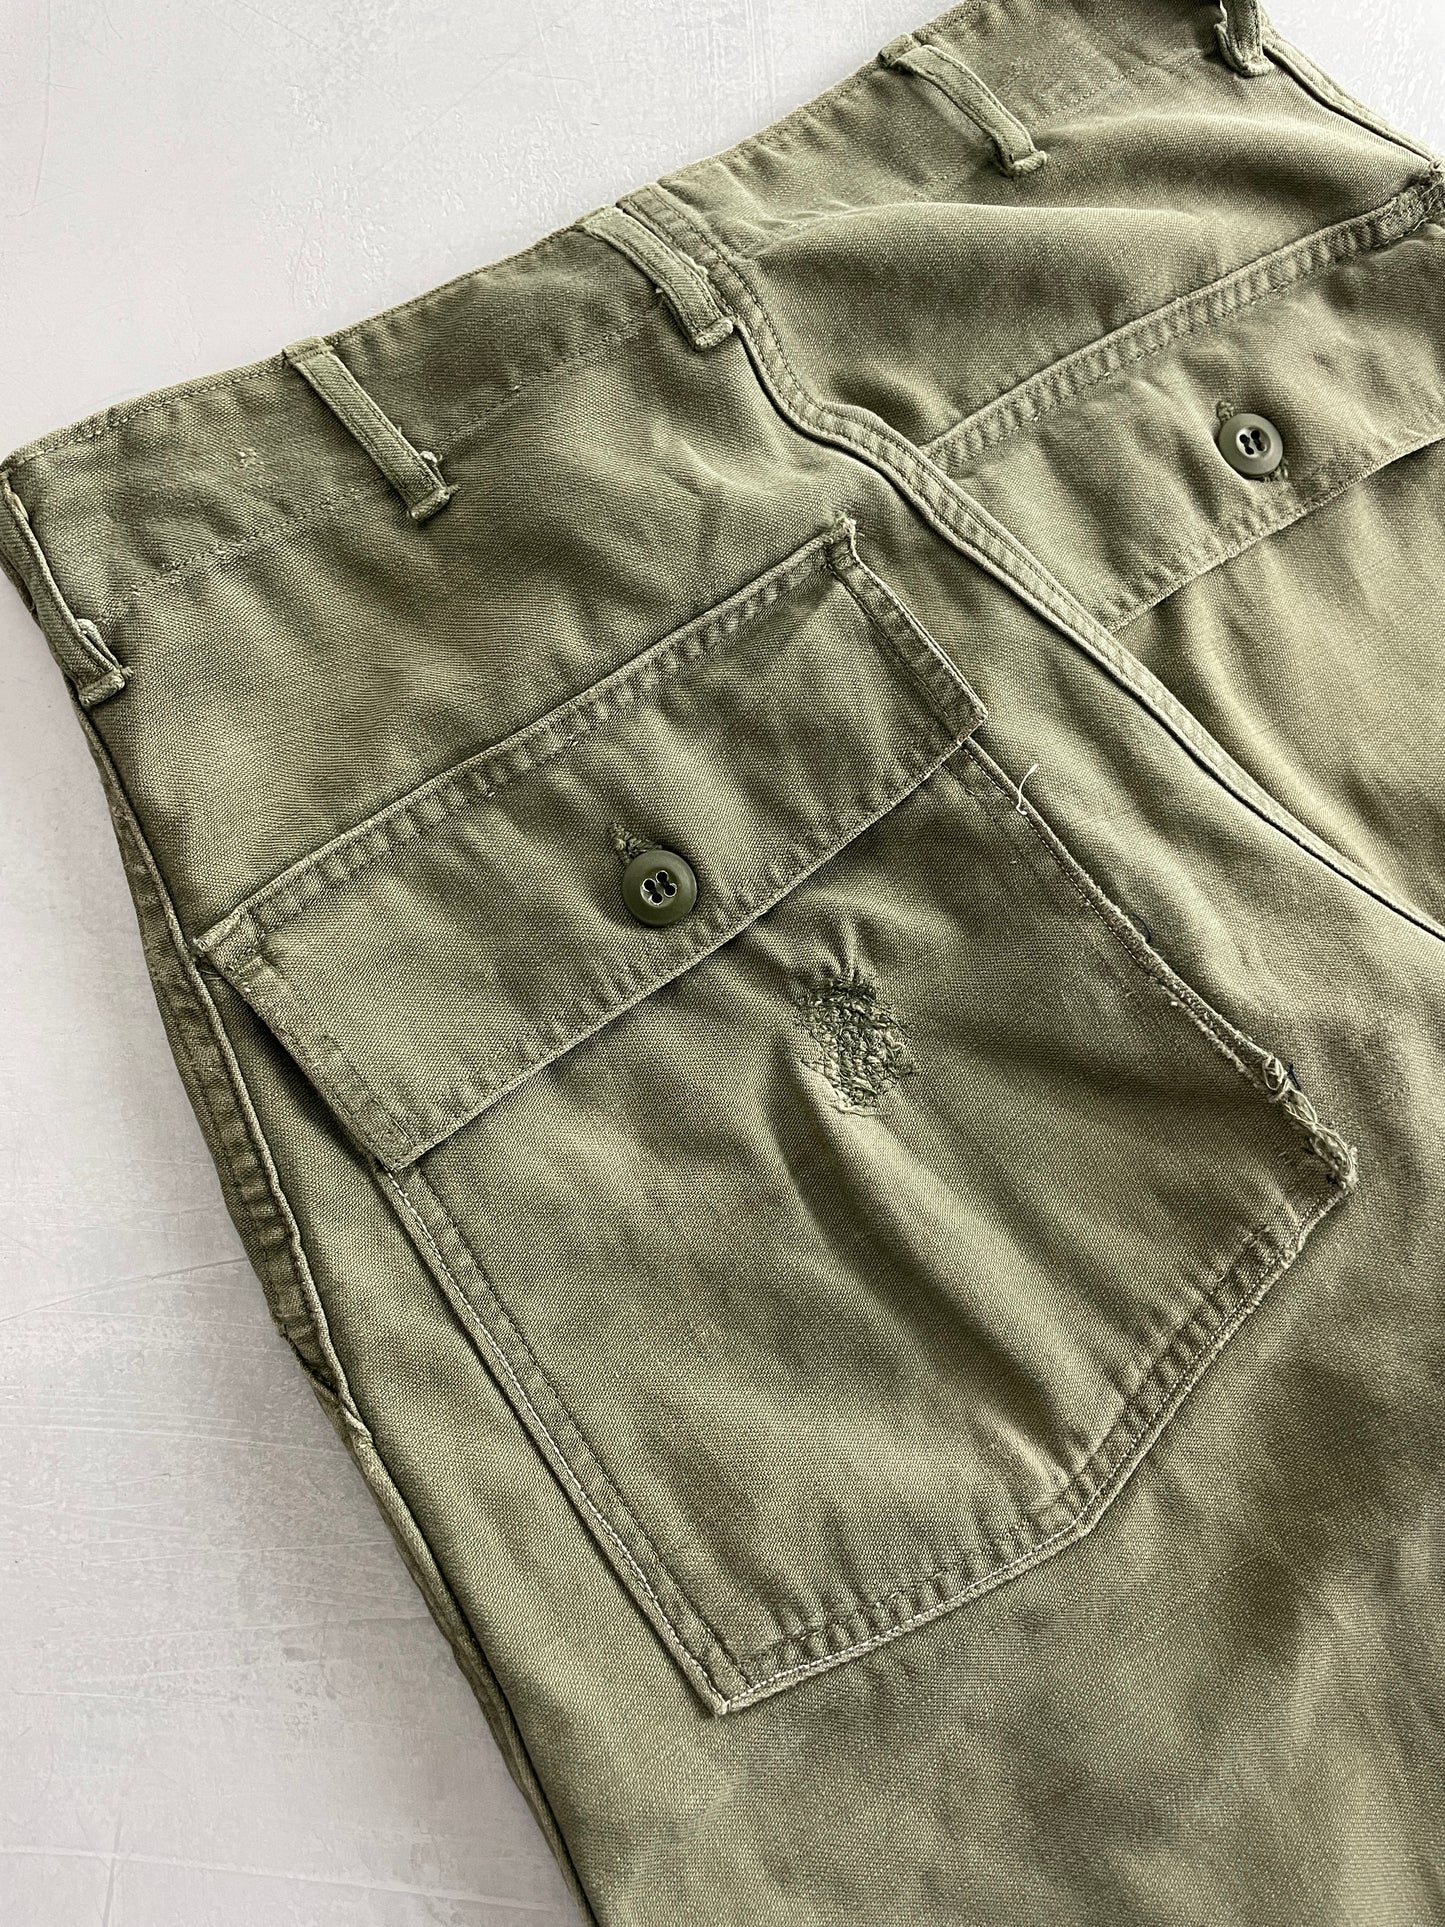 OG-107 US Army Pants [28"]